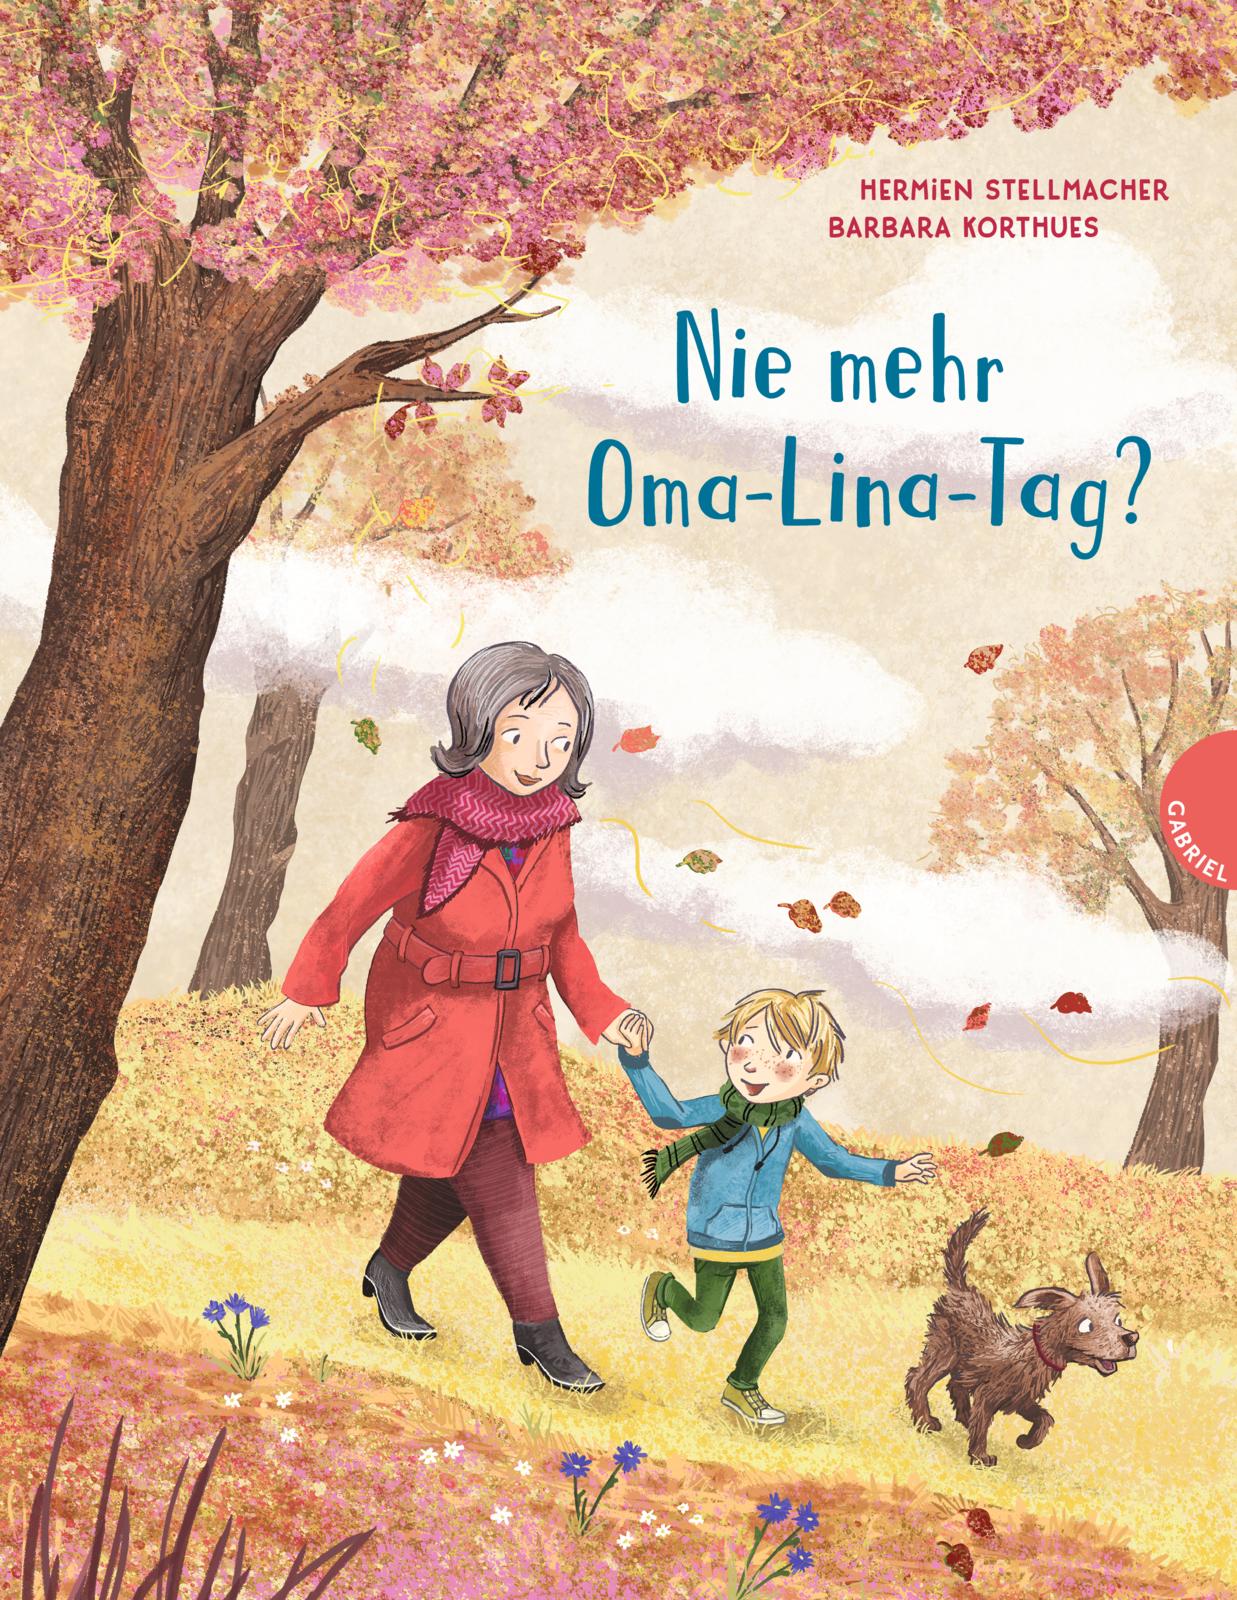 Buchcover "Nie mehr Oma-Lina-Tag", Gabriel 